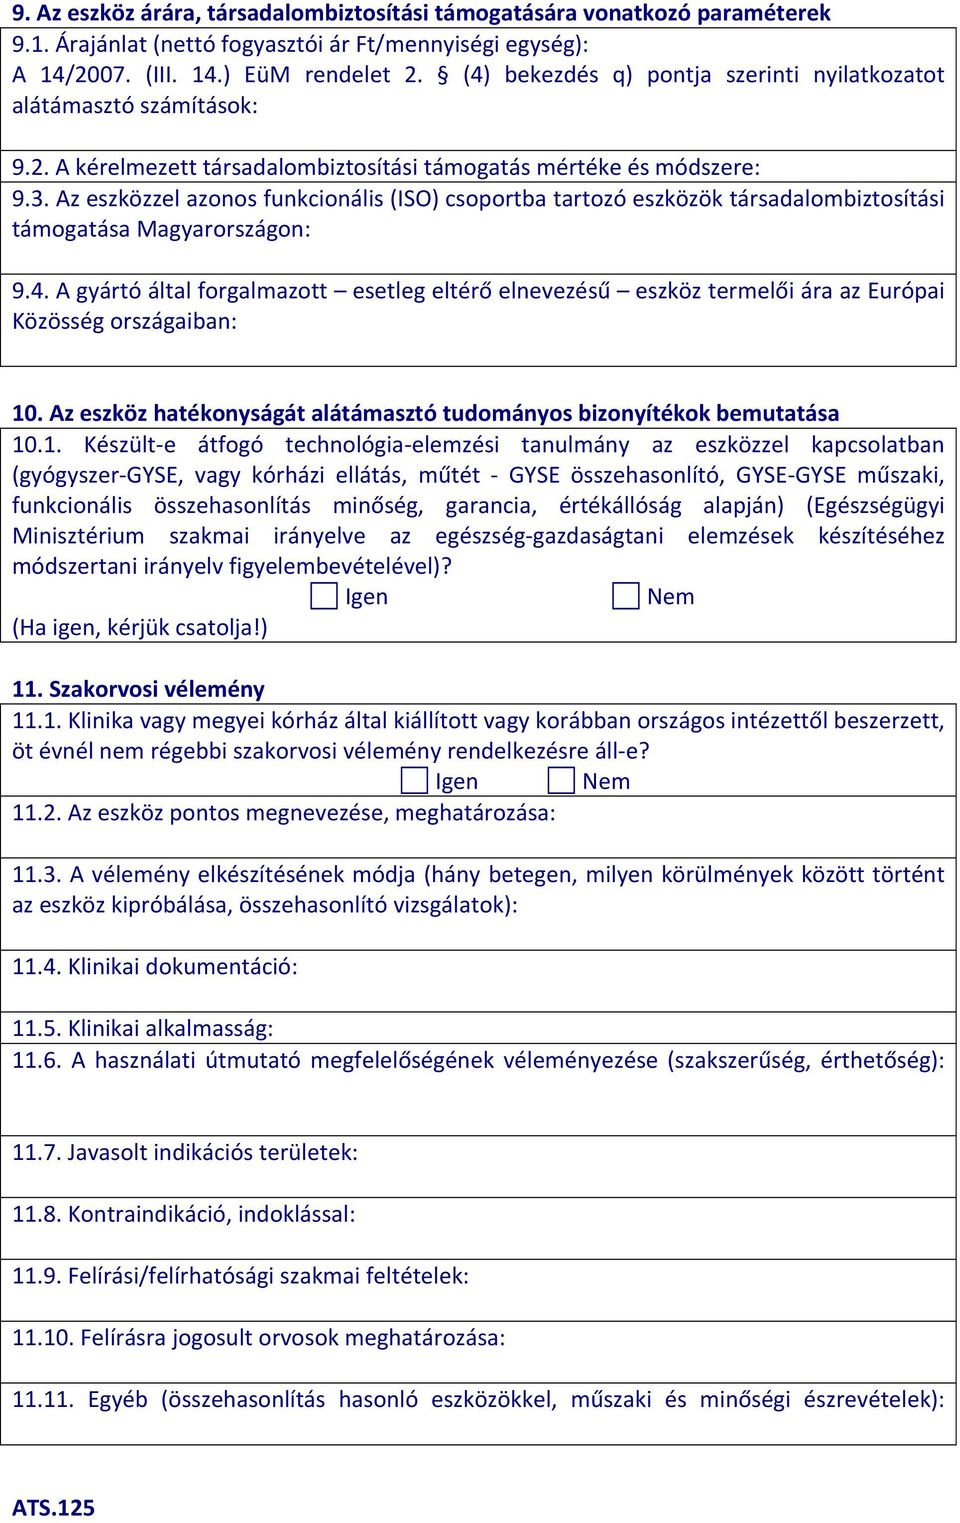 Az eszközzel azonos funkcionális (ISO) csoportba tartozó eszközök társadalombiztosítási támogatása Magyarországon: 9.4.